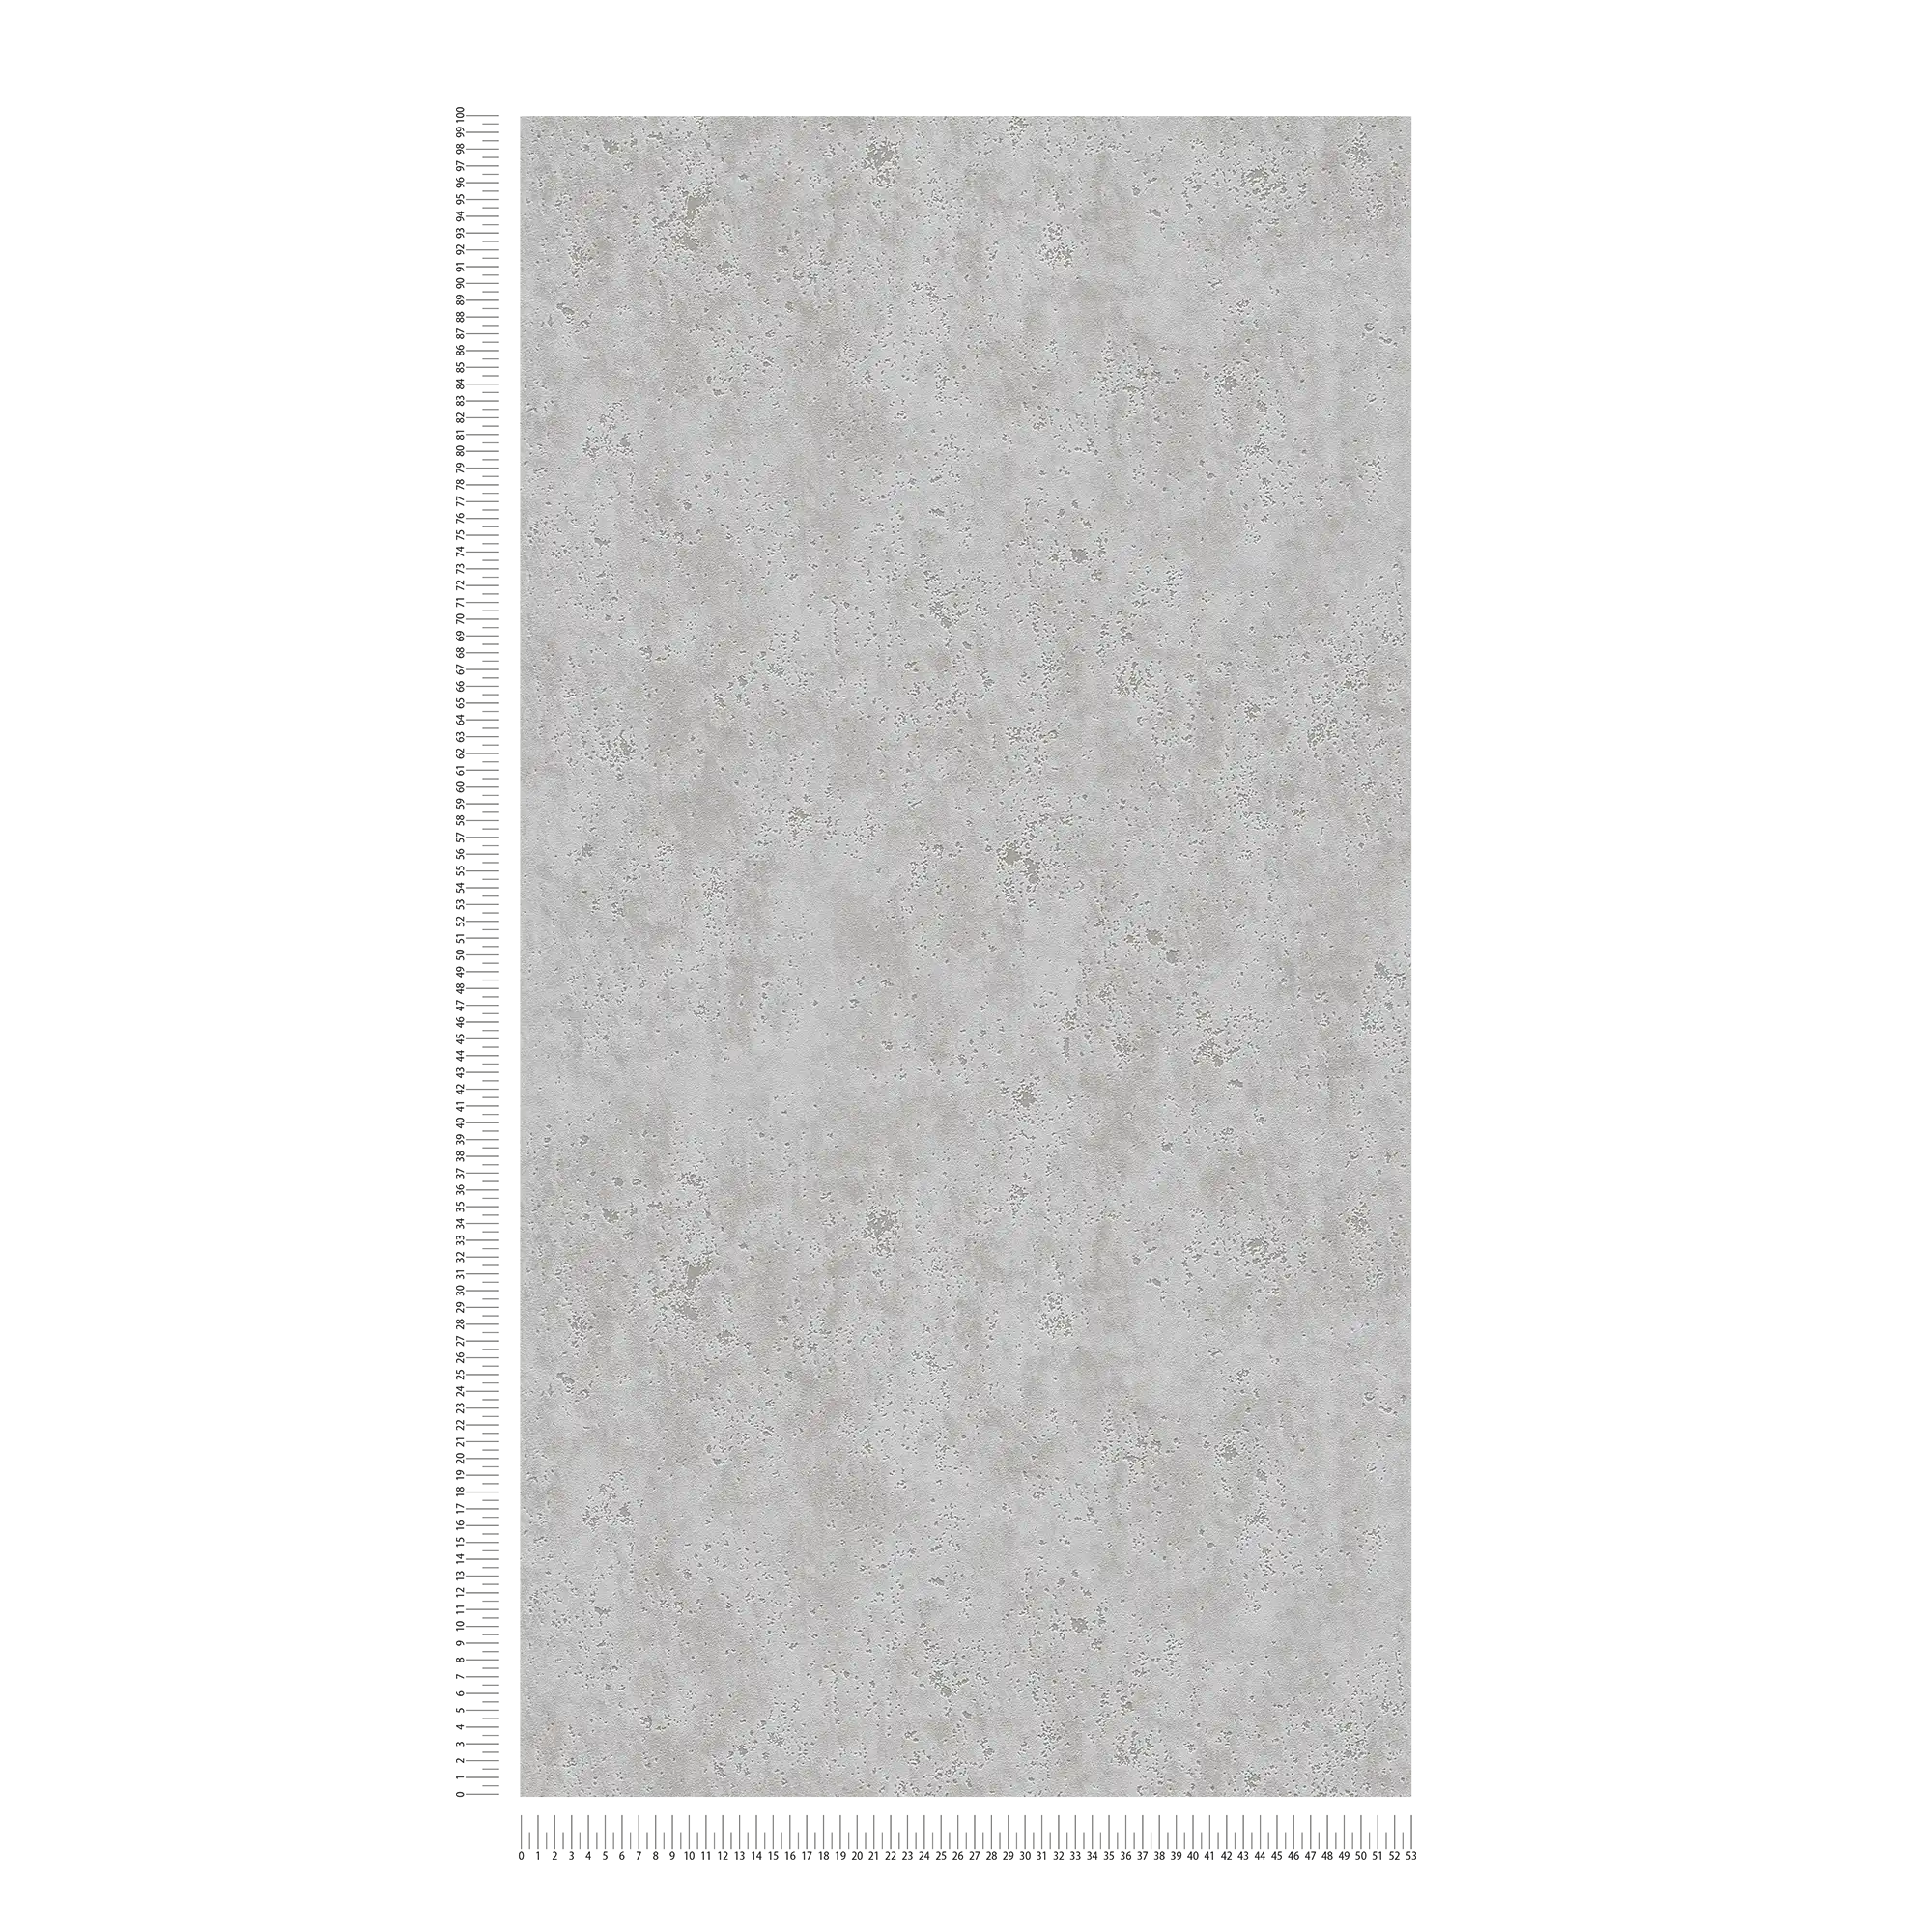             Papier peint aspect plâtre avec structure de surface rugueuse - gris
        